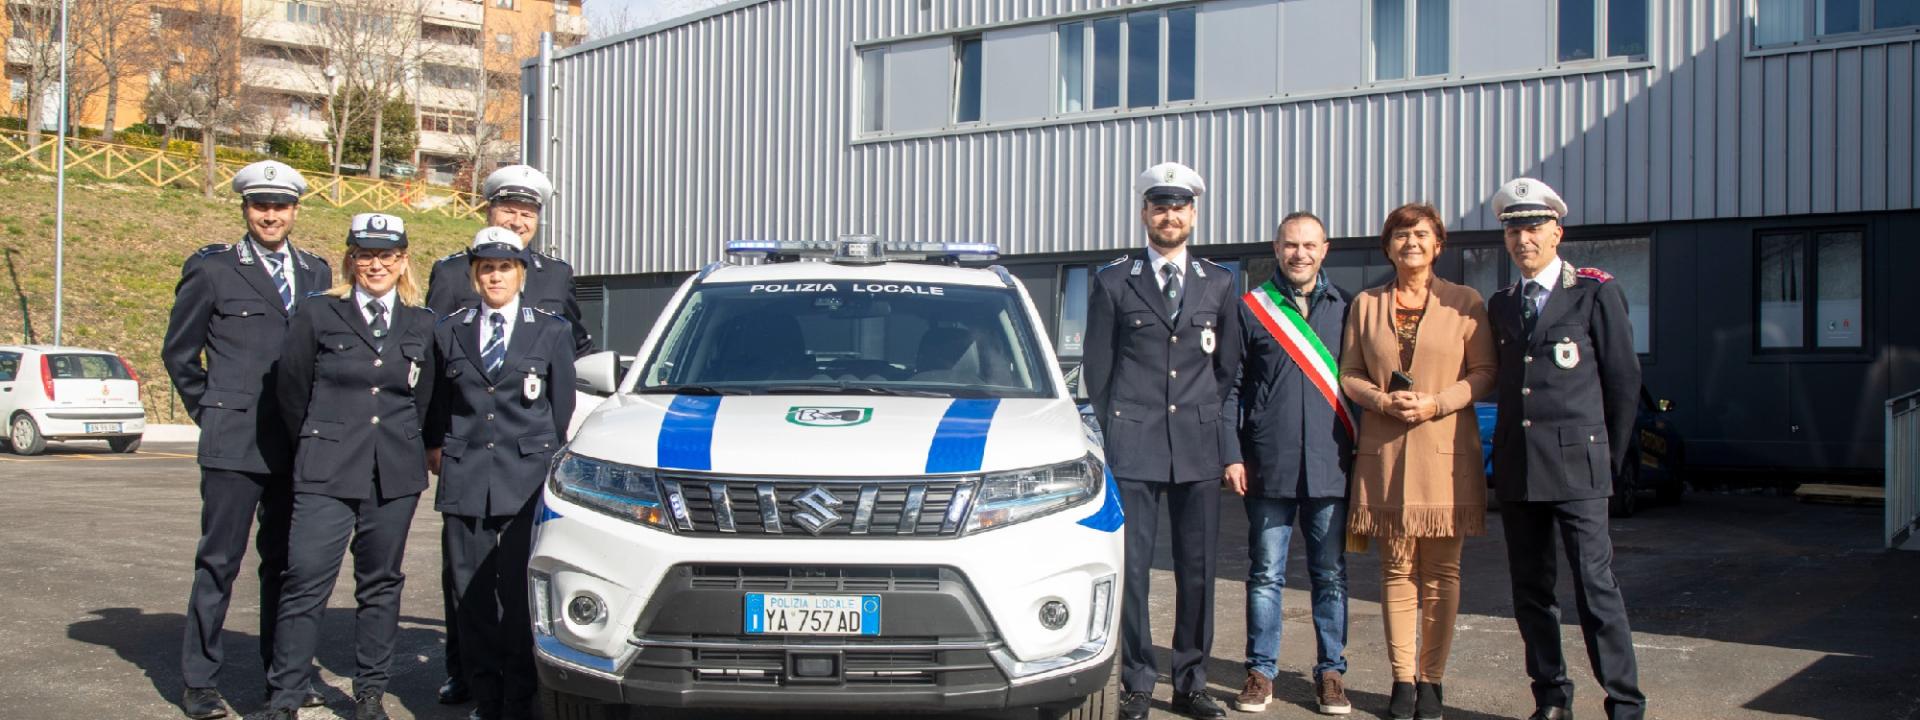 Marche - Camerino, una nuova autovettura per la Polizia Locale grazie ad un bando regionale